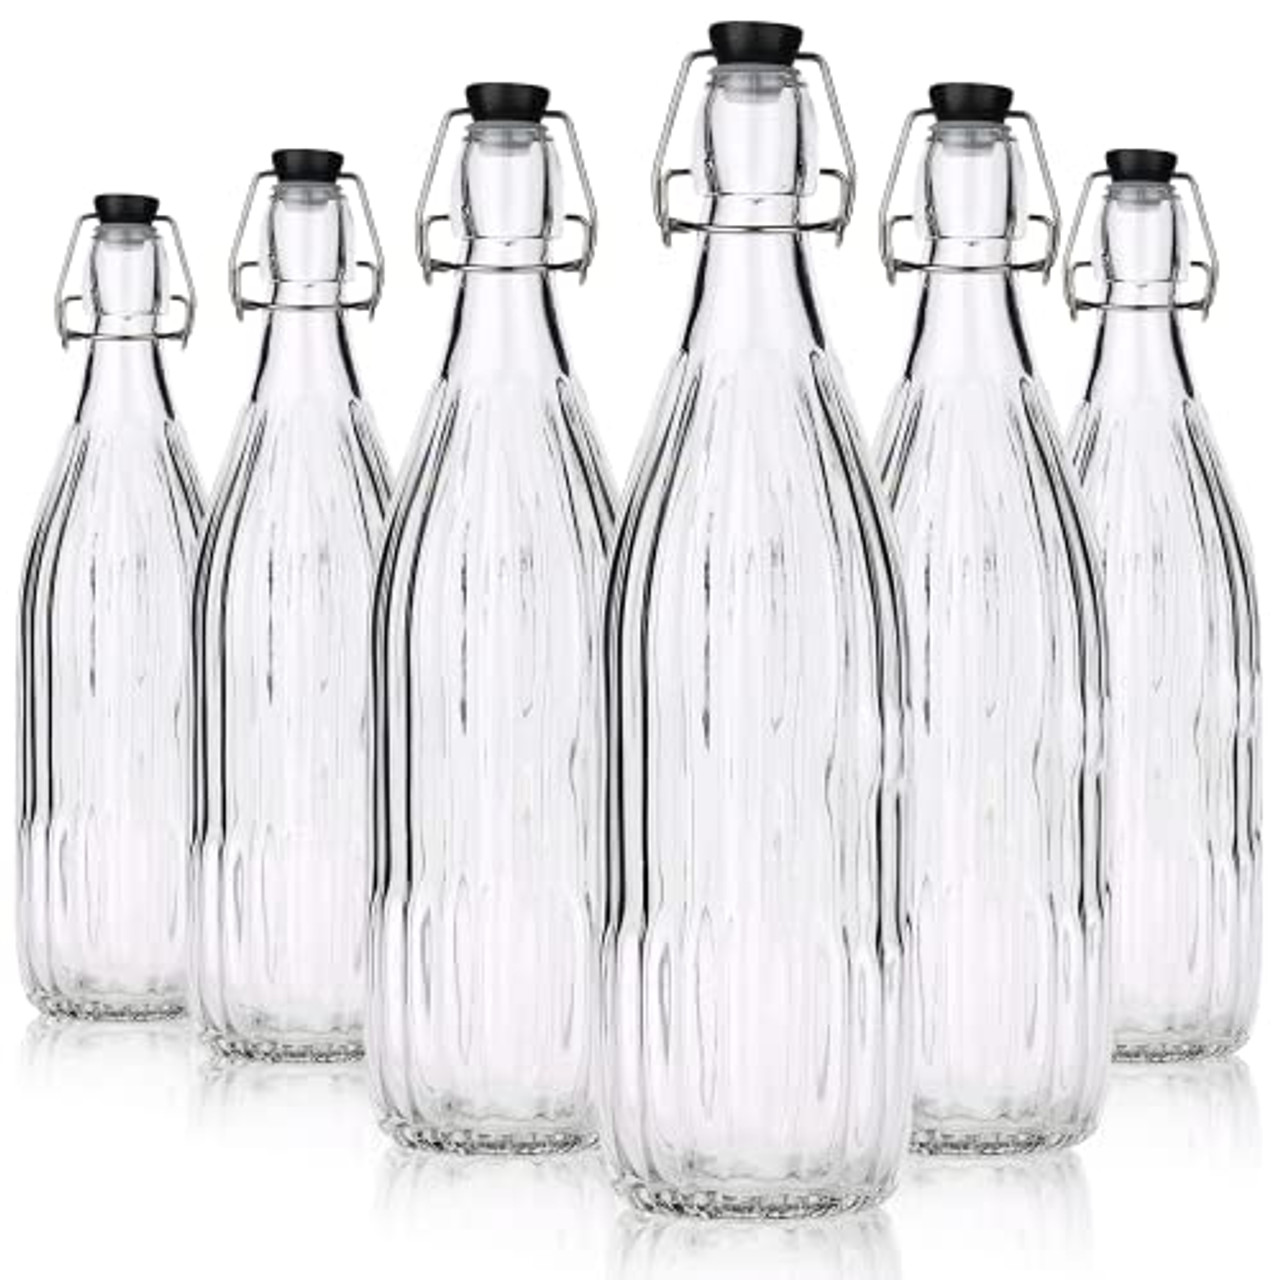 One Liter Glass Bottle